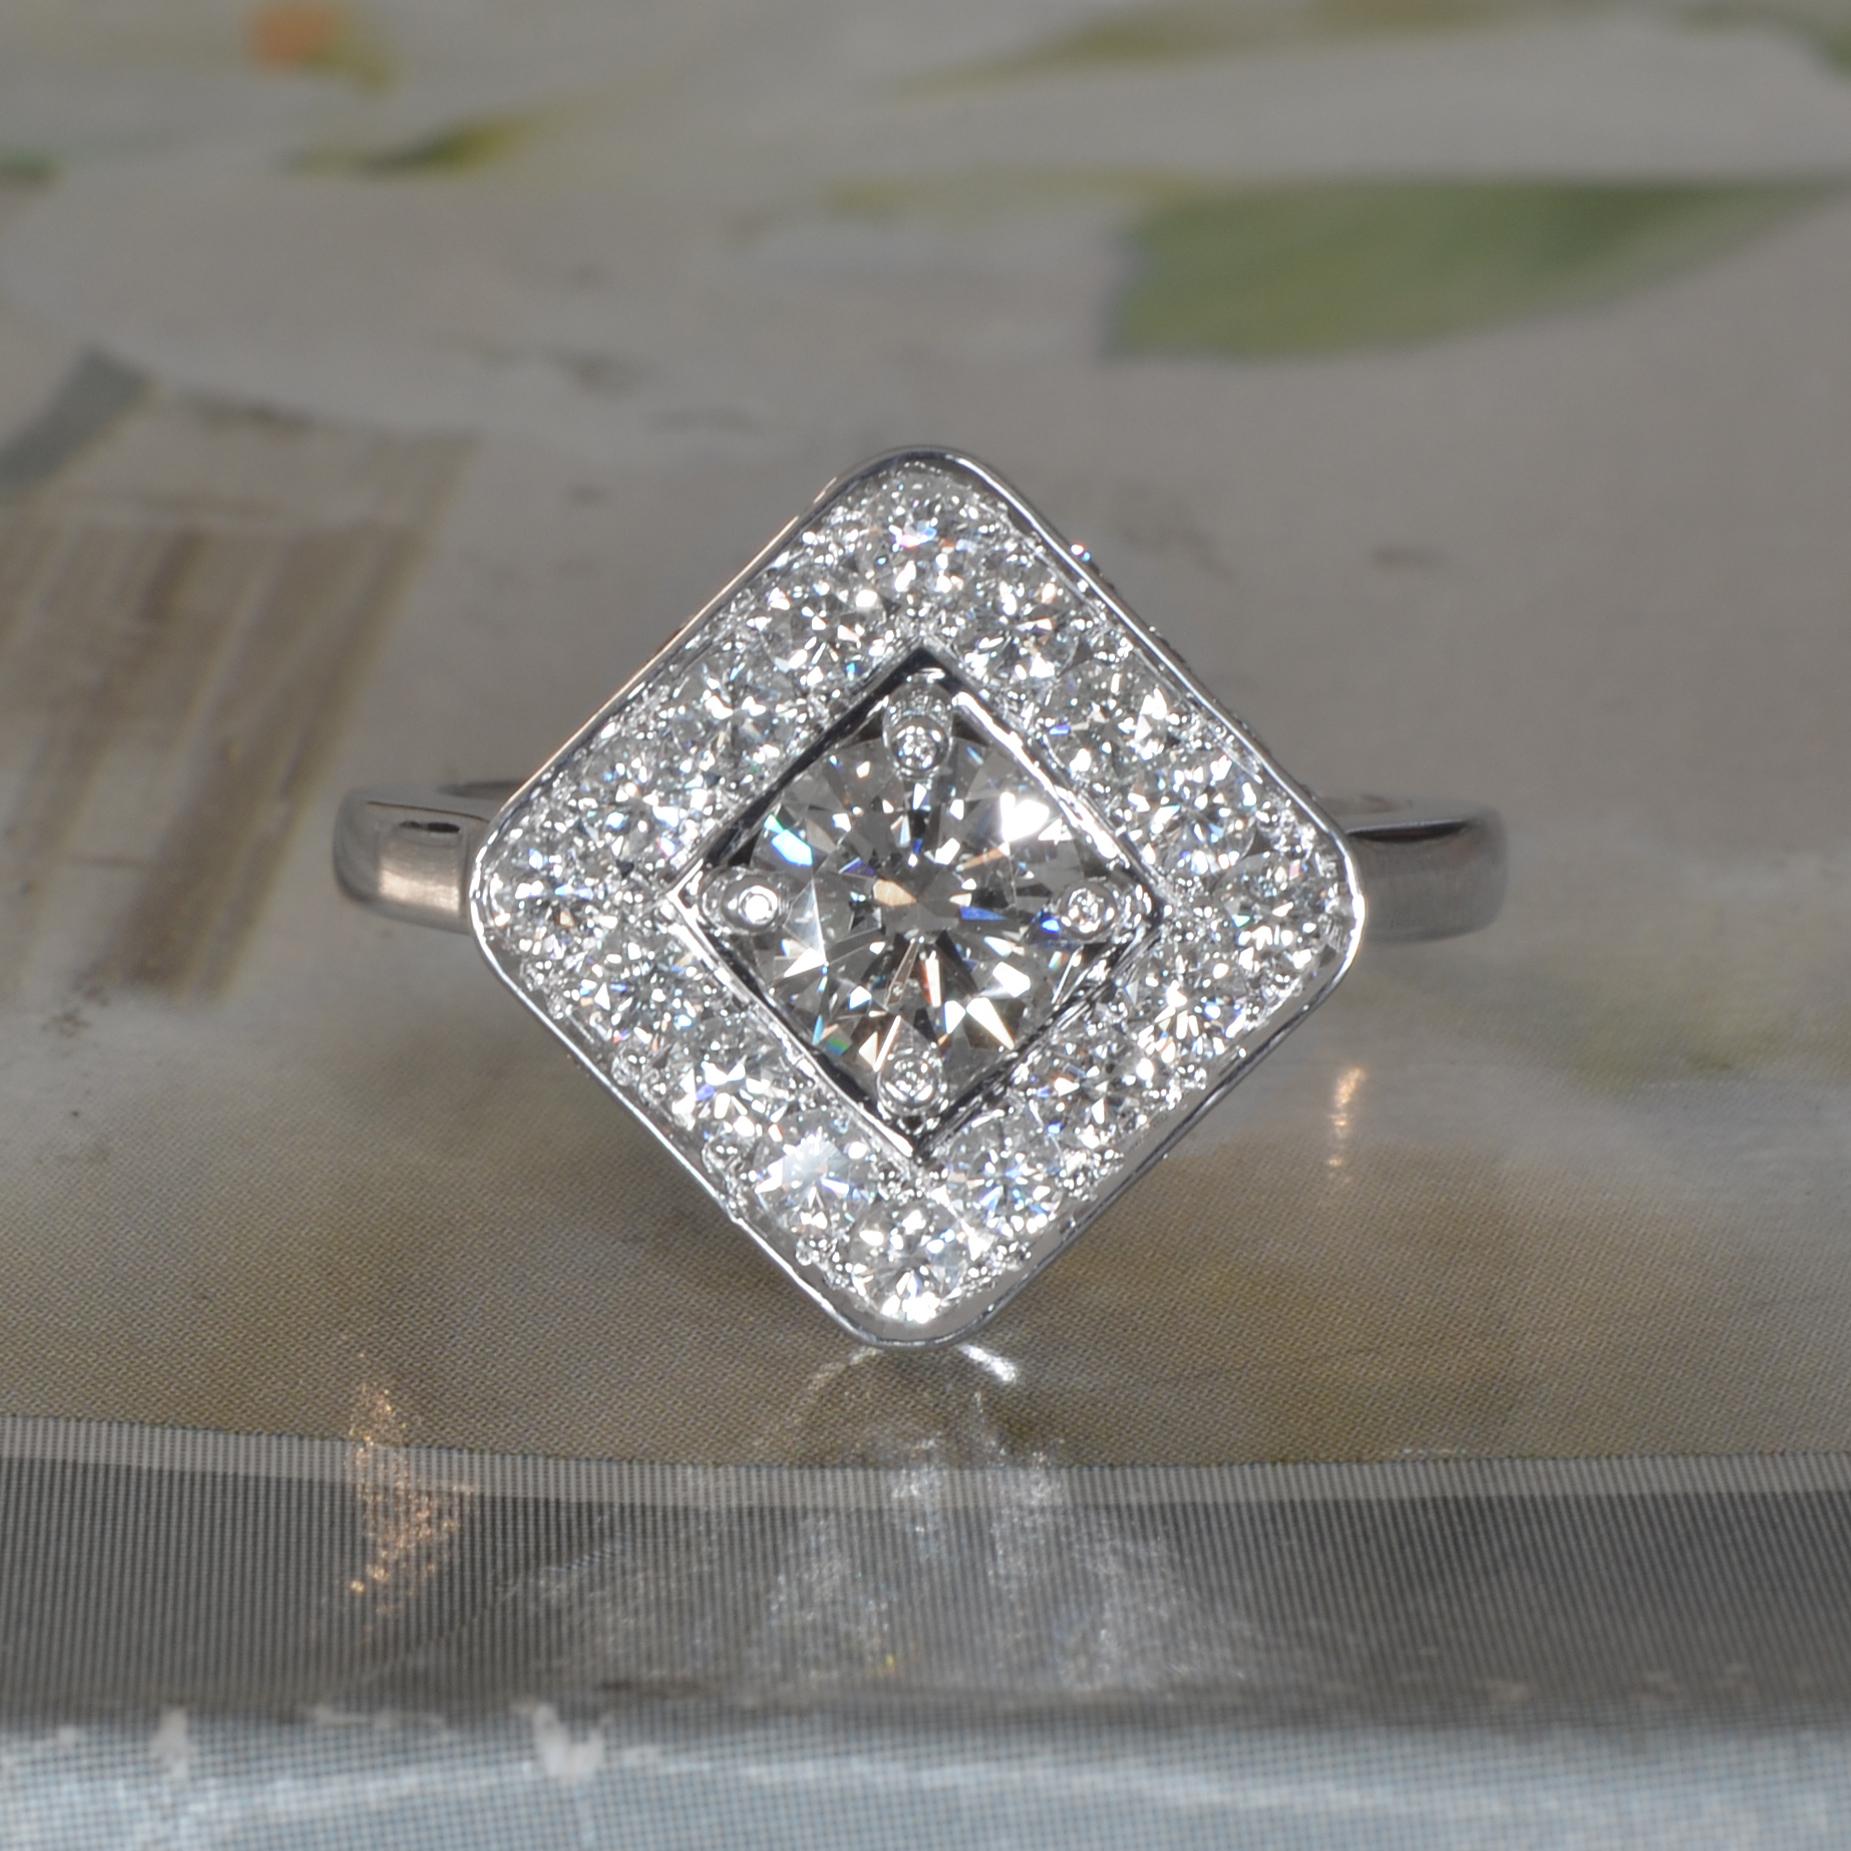 1.5 carat round diamond ring with halo